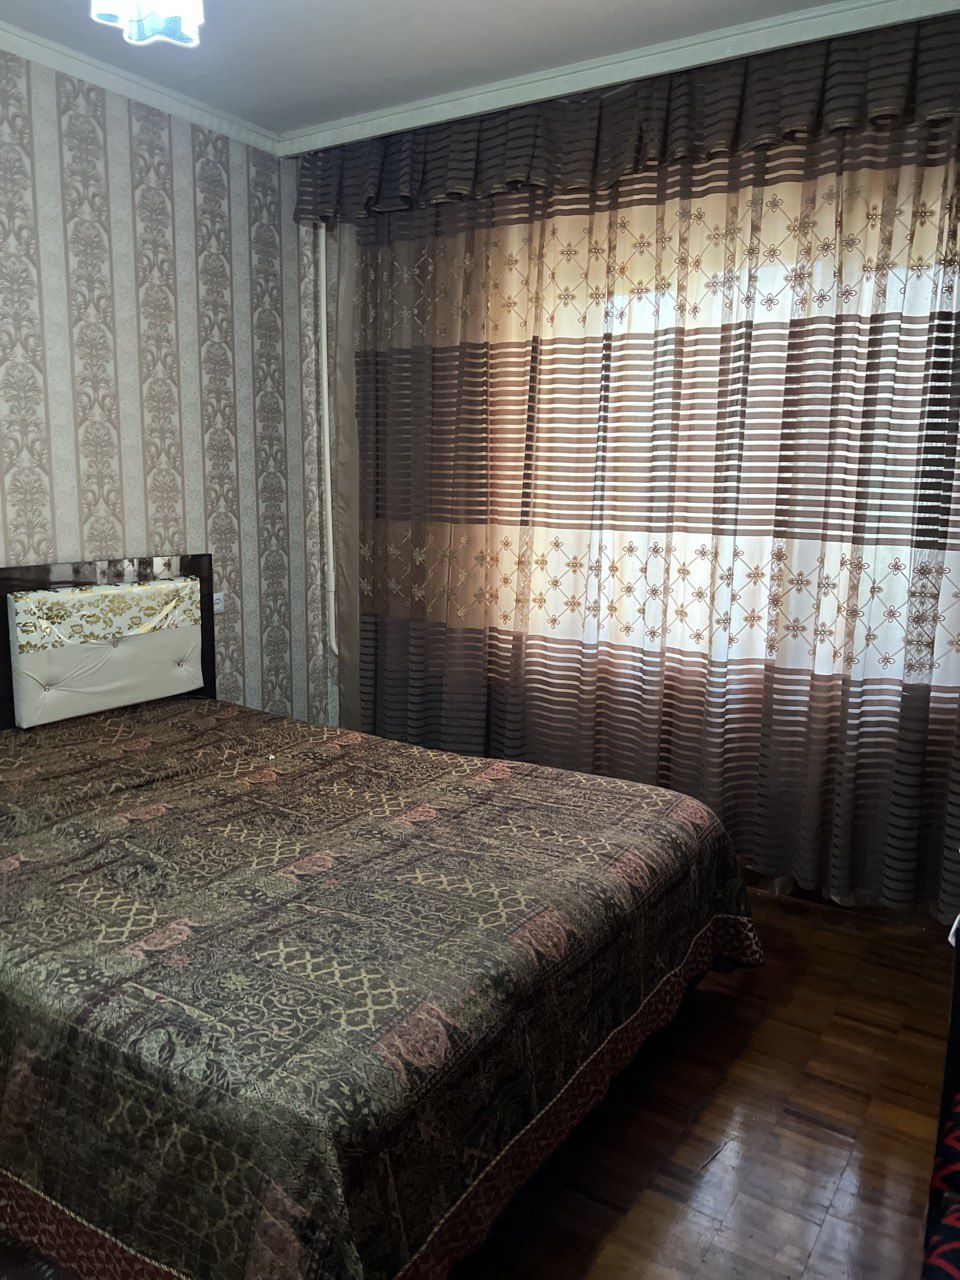 Аренда 2-х комнатной квартиры в Ташсельмаше, ориентир парк Ашхабад